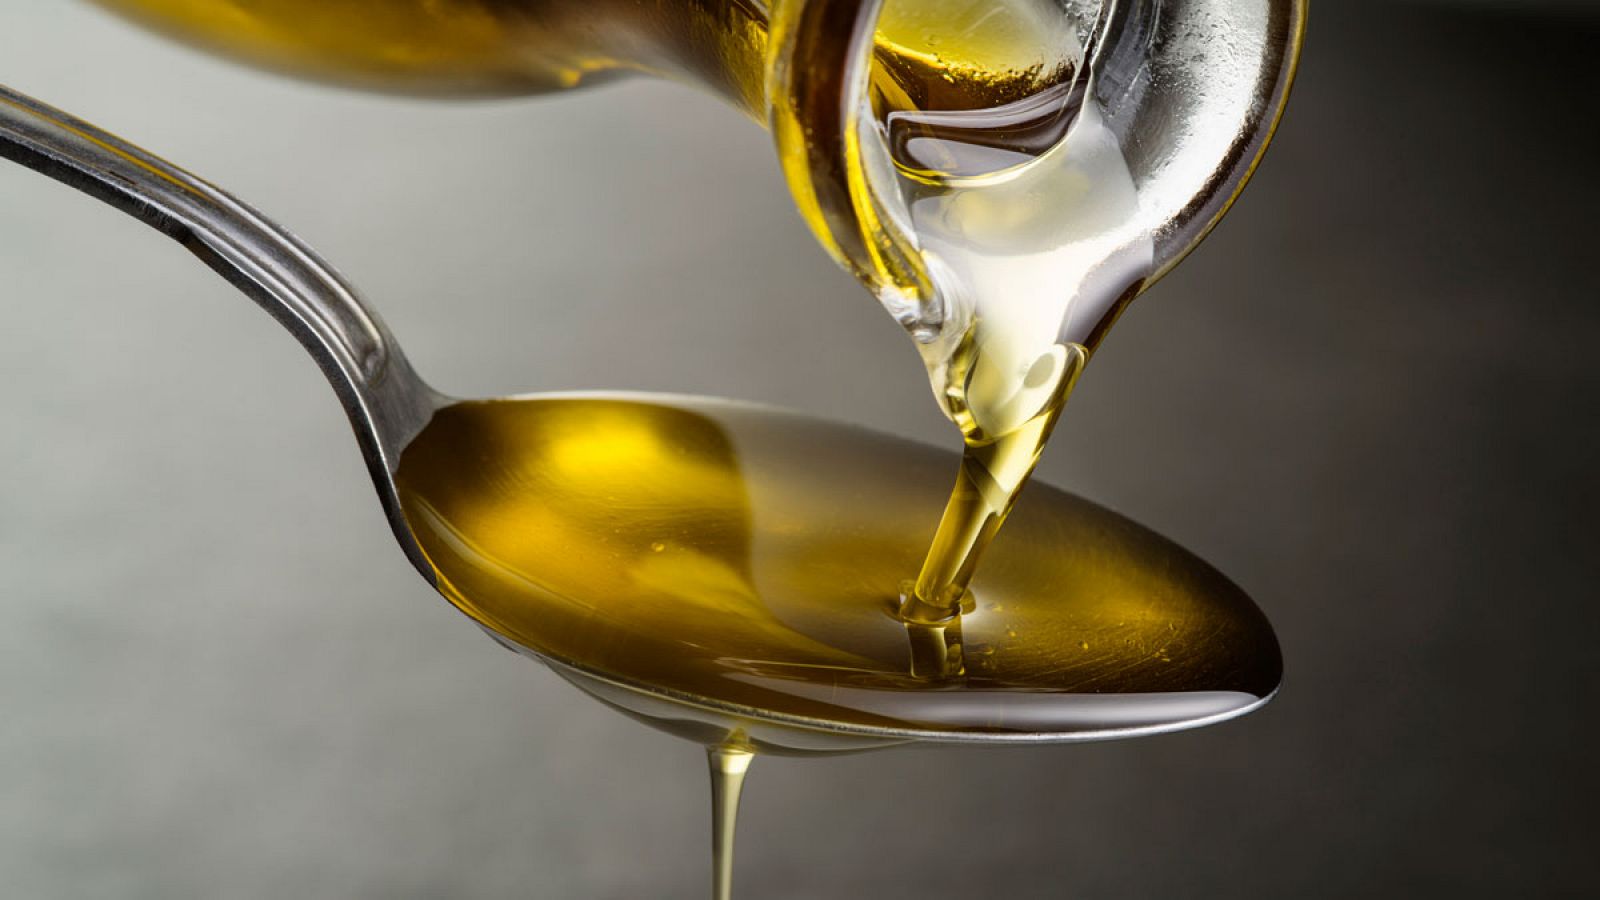 Los científicos han sintetizado los dos compuestos presentes en el aceite de oliva -el ácido oleanólico y el ácido maslínico-.